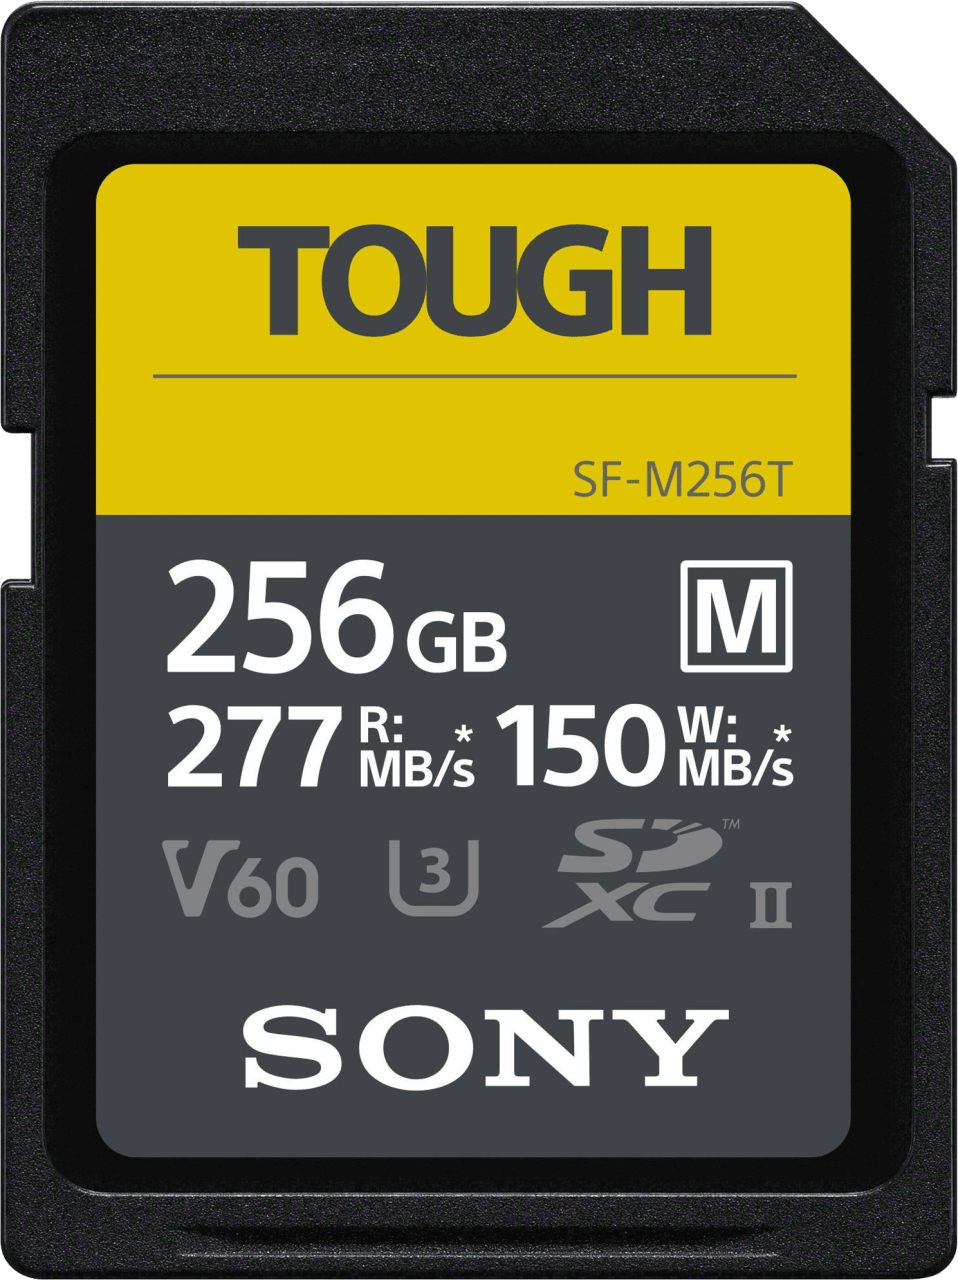 Schwarz Sony SF-M Tough Series R277/W150 SDXC 256GB, UHS-II U3, Class 10.1